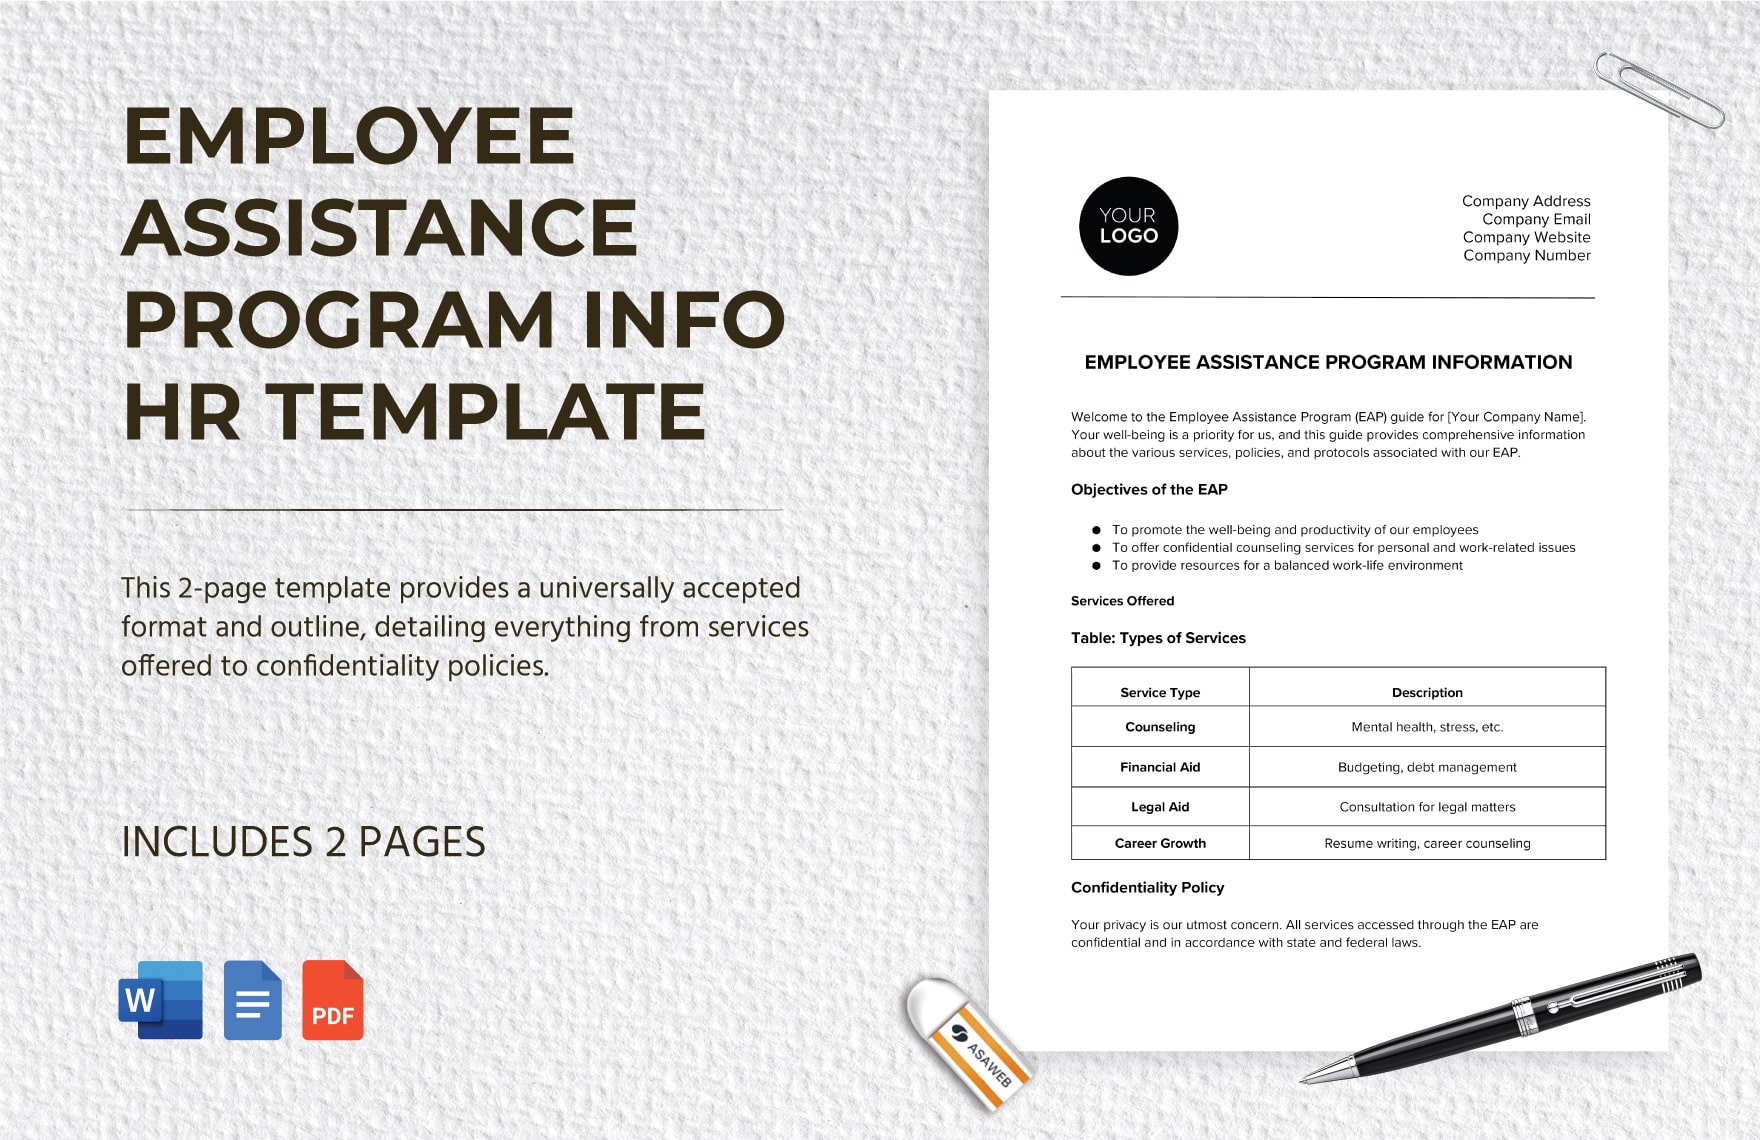 Employee Assistance Program Info HR Template